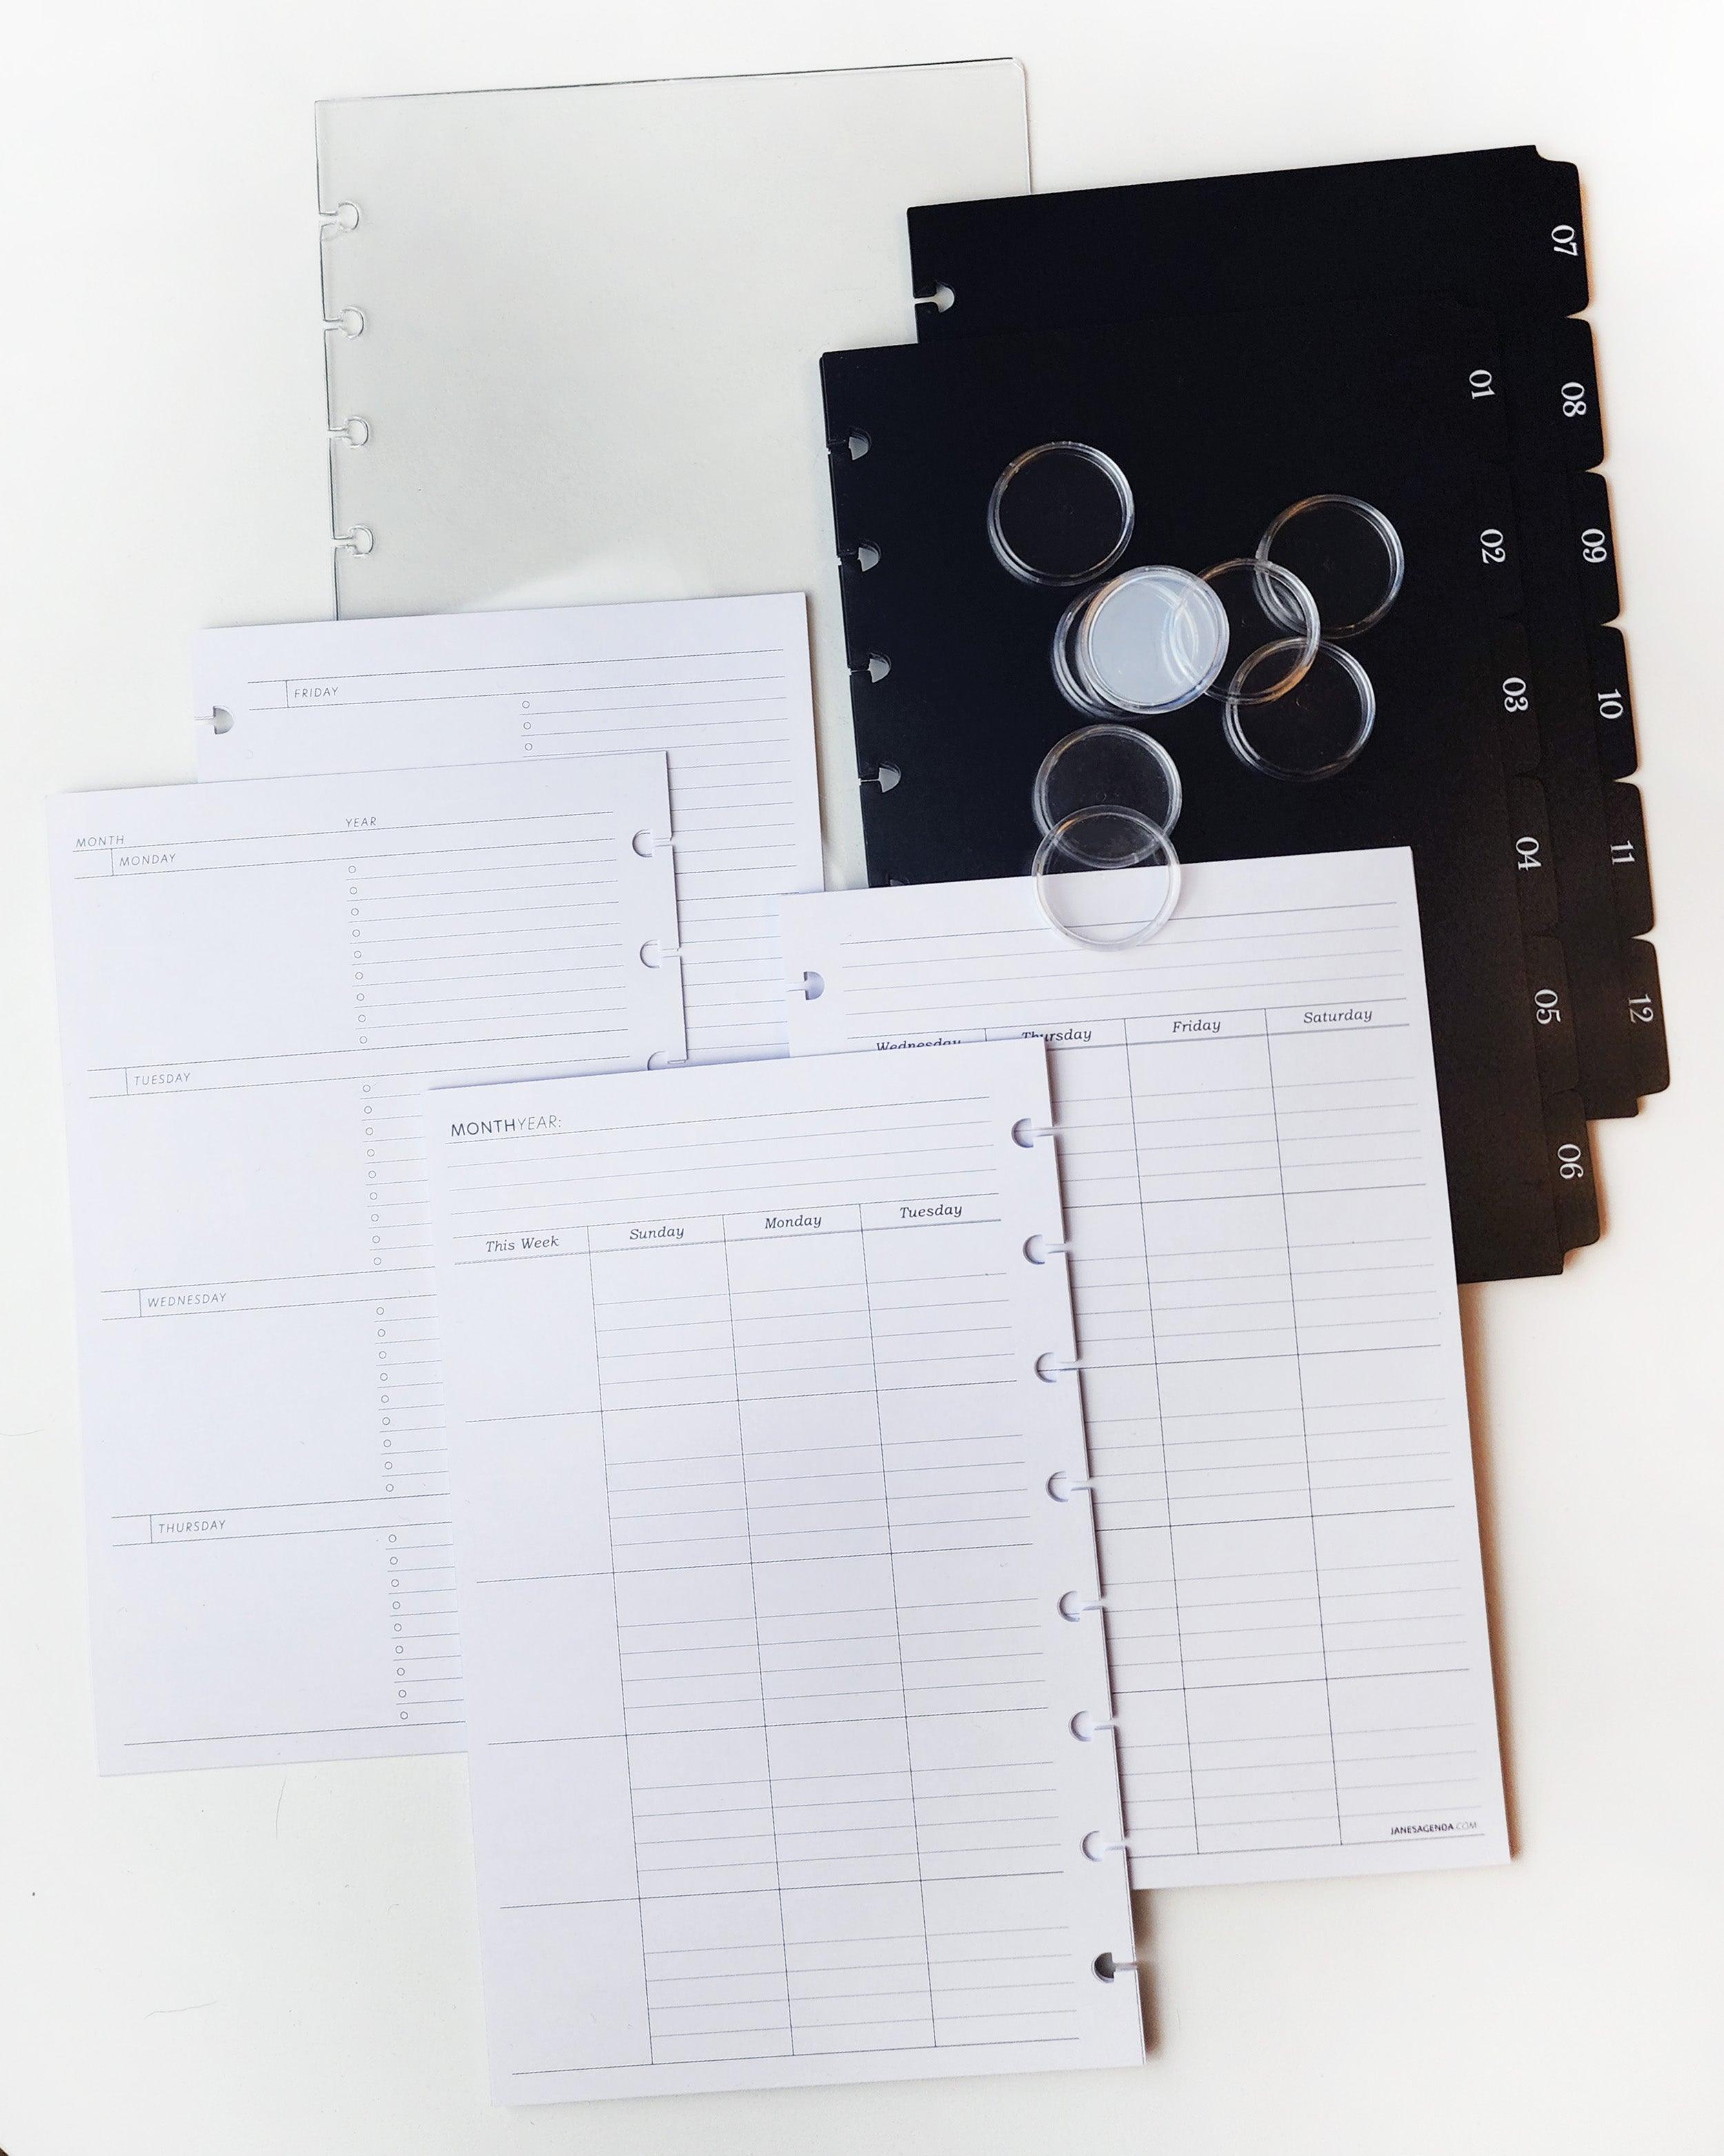 Disc Planner Kit, Discbound Planner Notebook